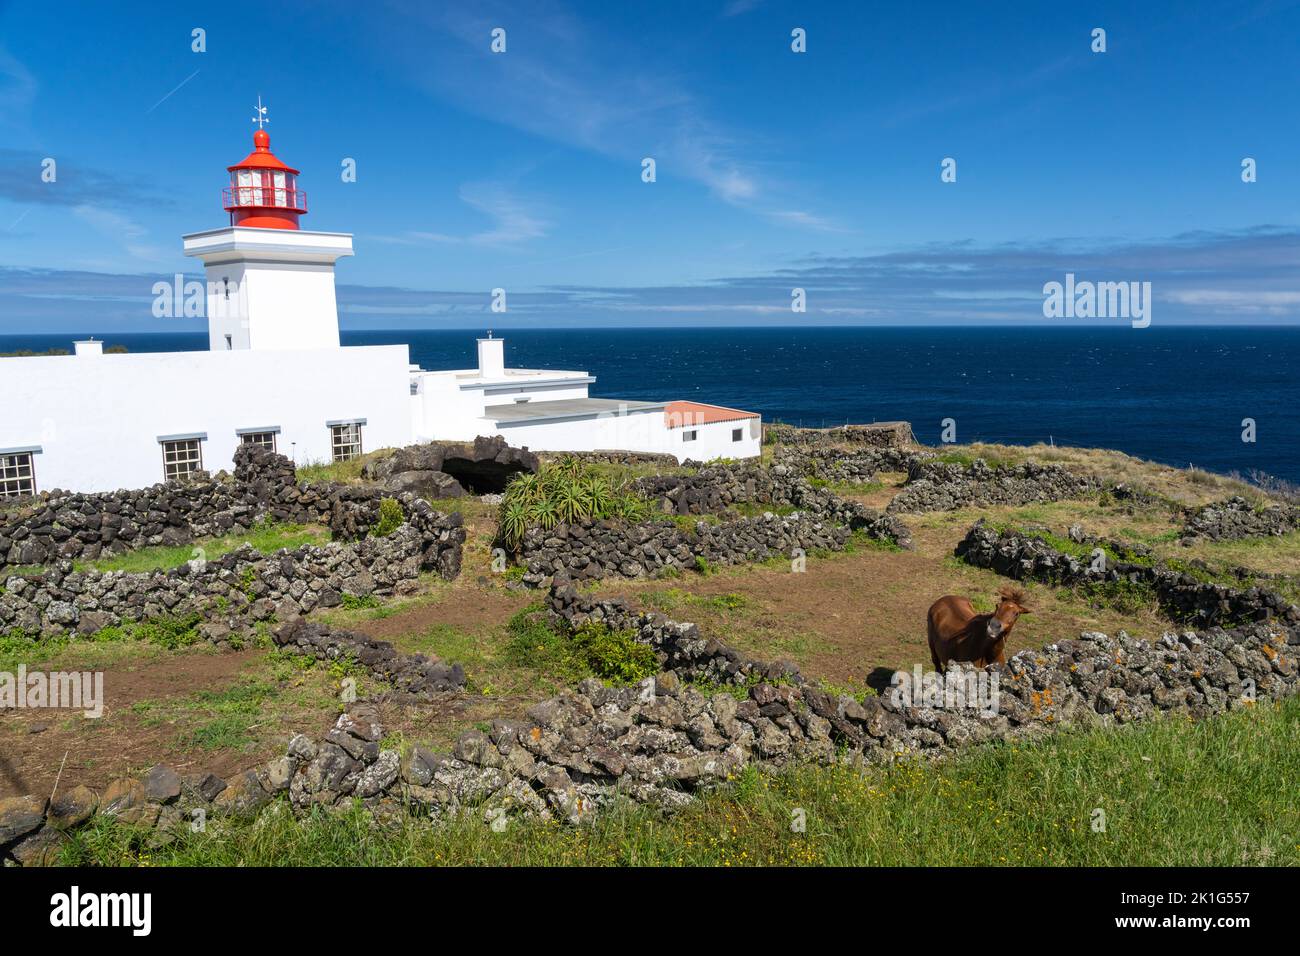 Le phare de Ponta das Contendas et un cheval sur l'île de Terceira, Açores, Portugal. Banque D'Images